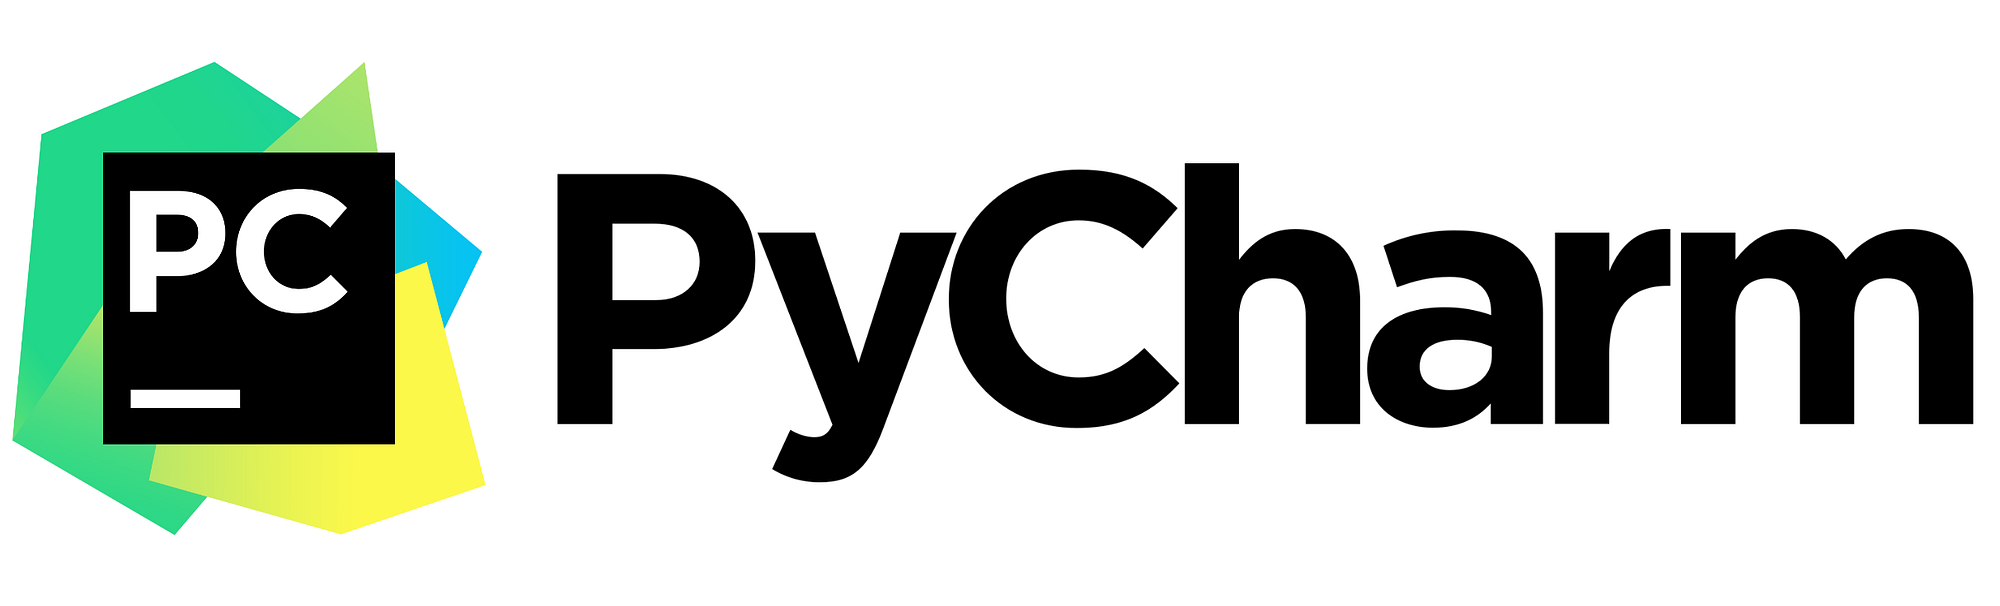 软件测试/人工智能|PyCharm常用快捷键指南